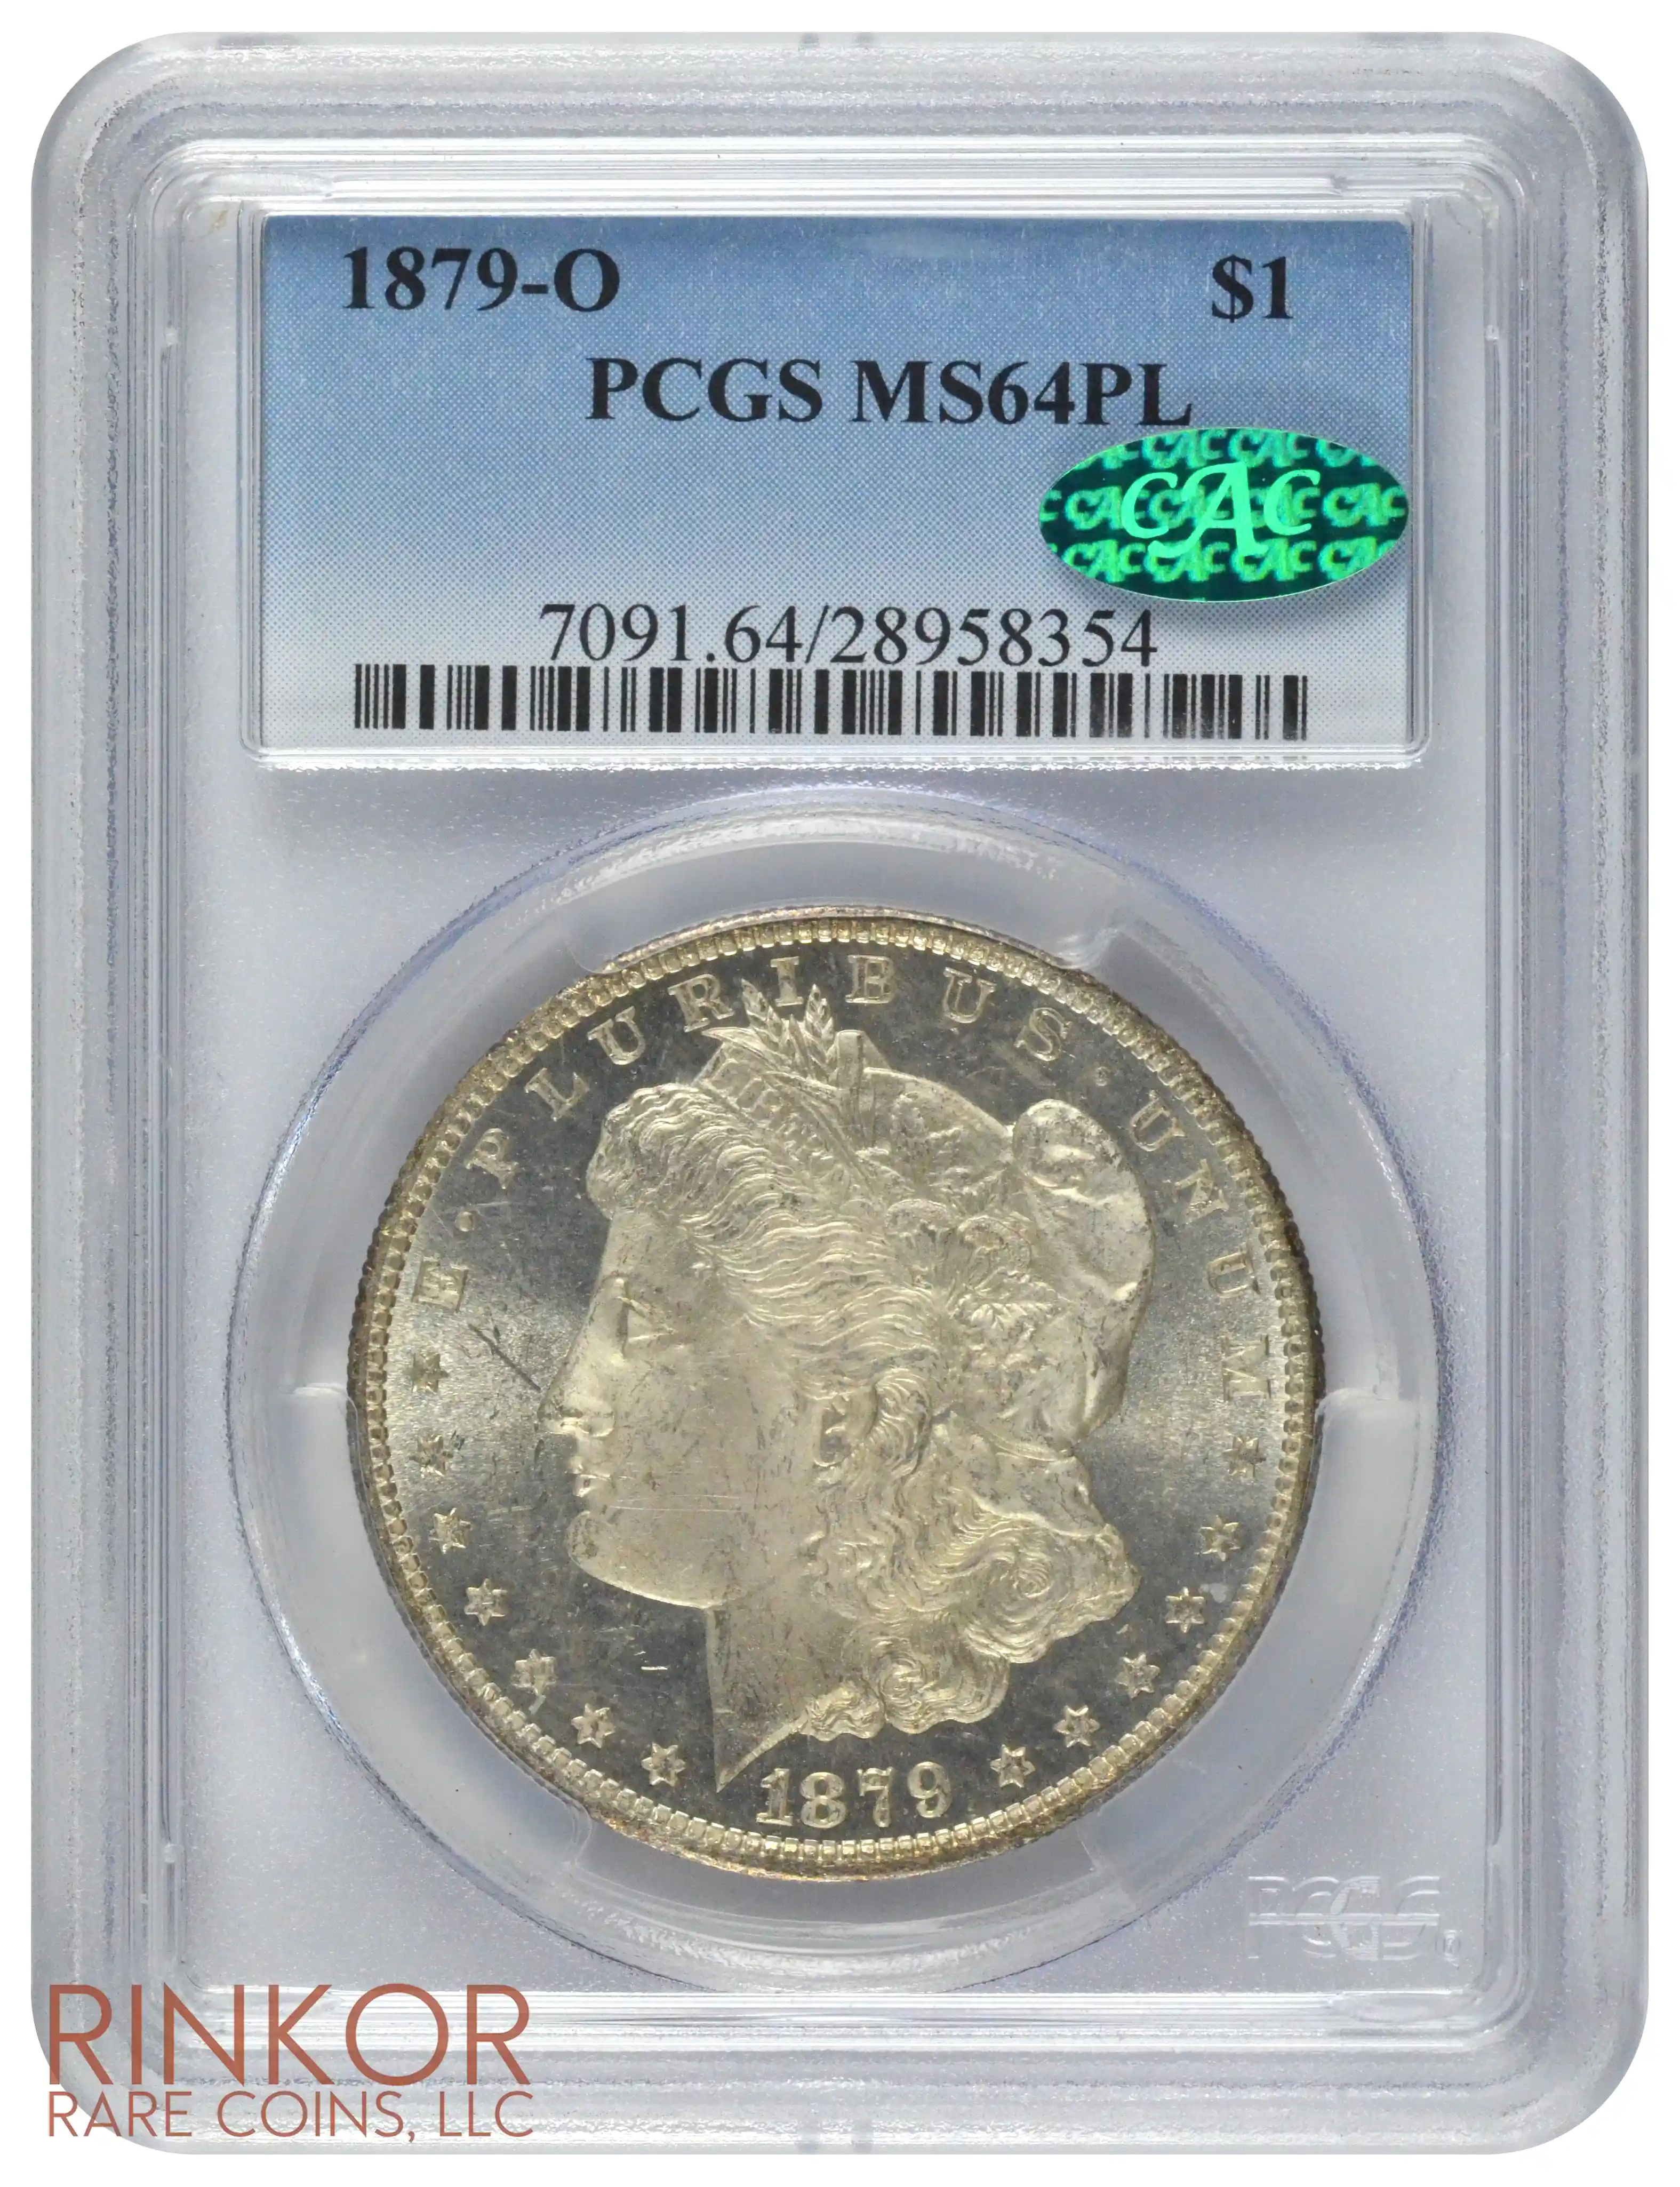 1879-O $1 PCGS MS 64 PL CAC